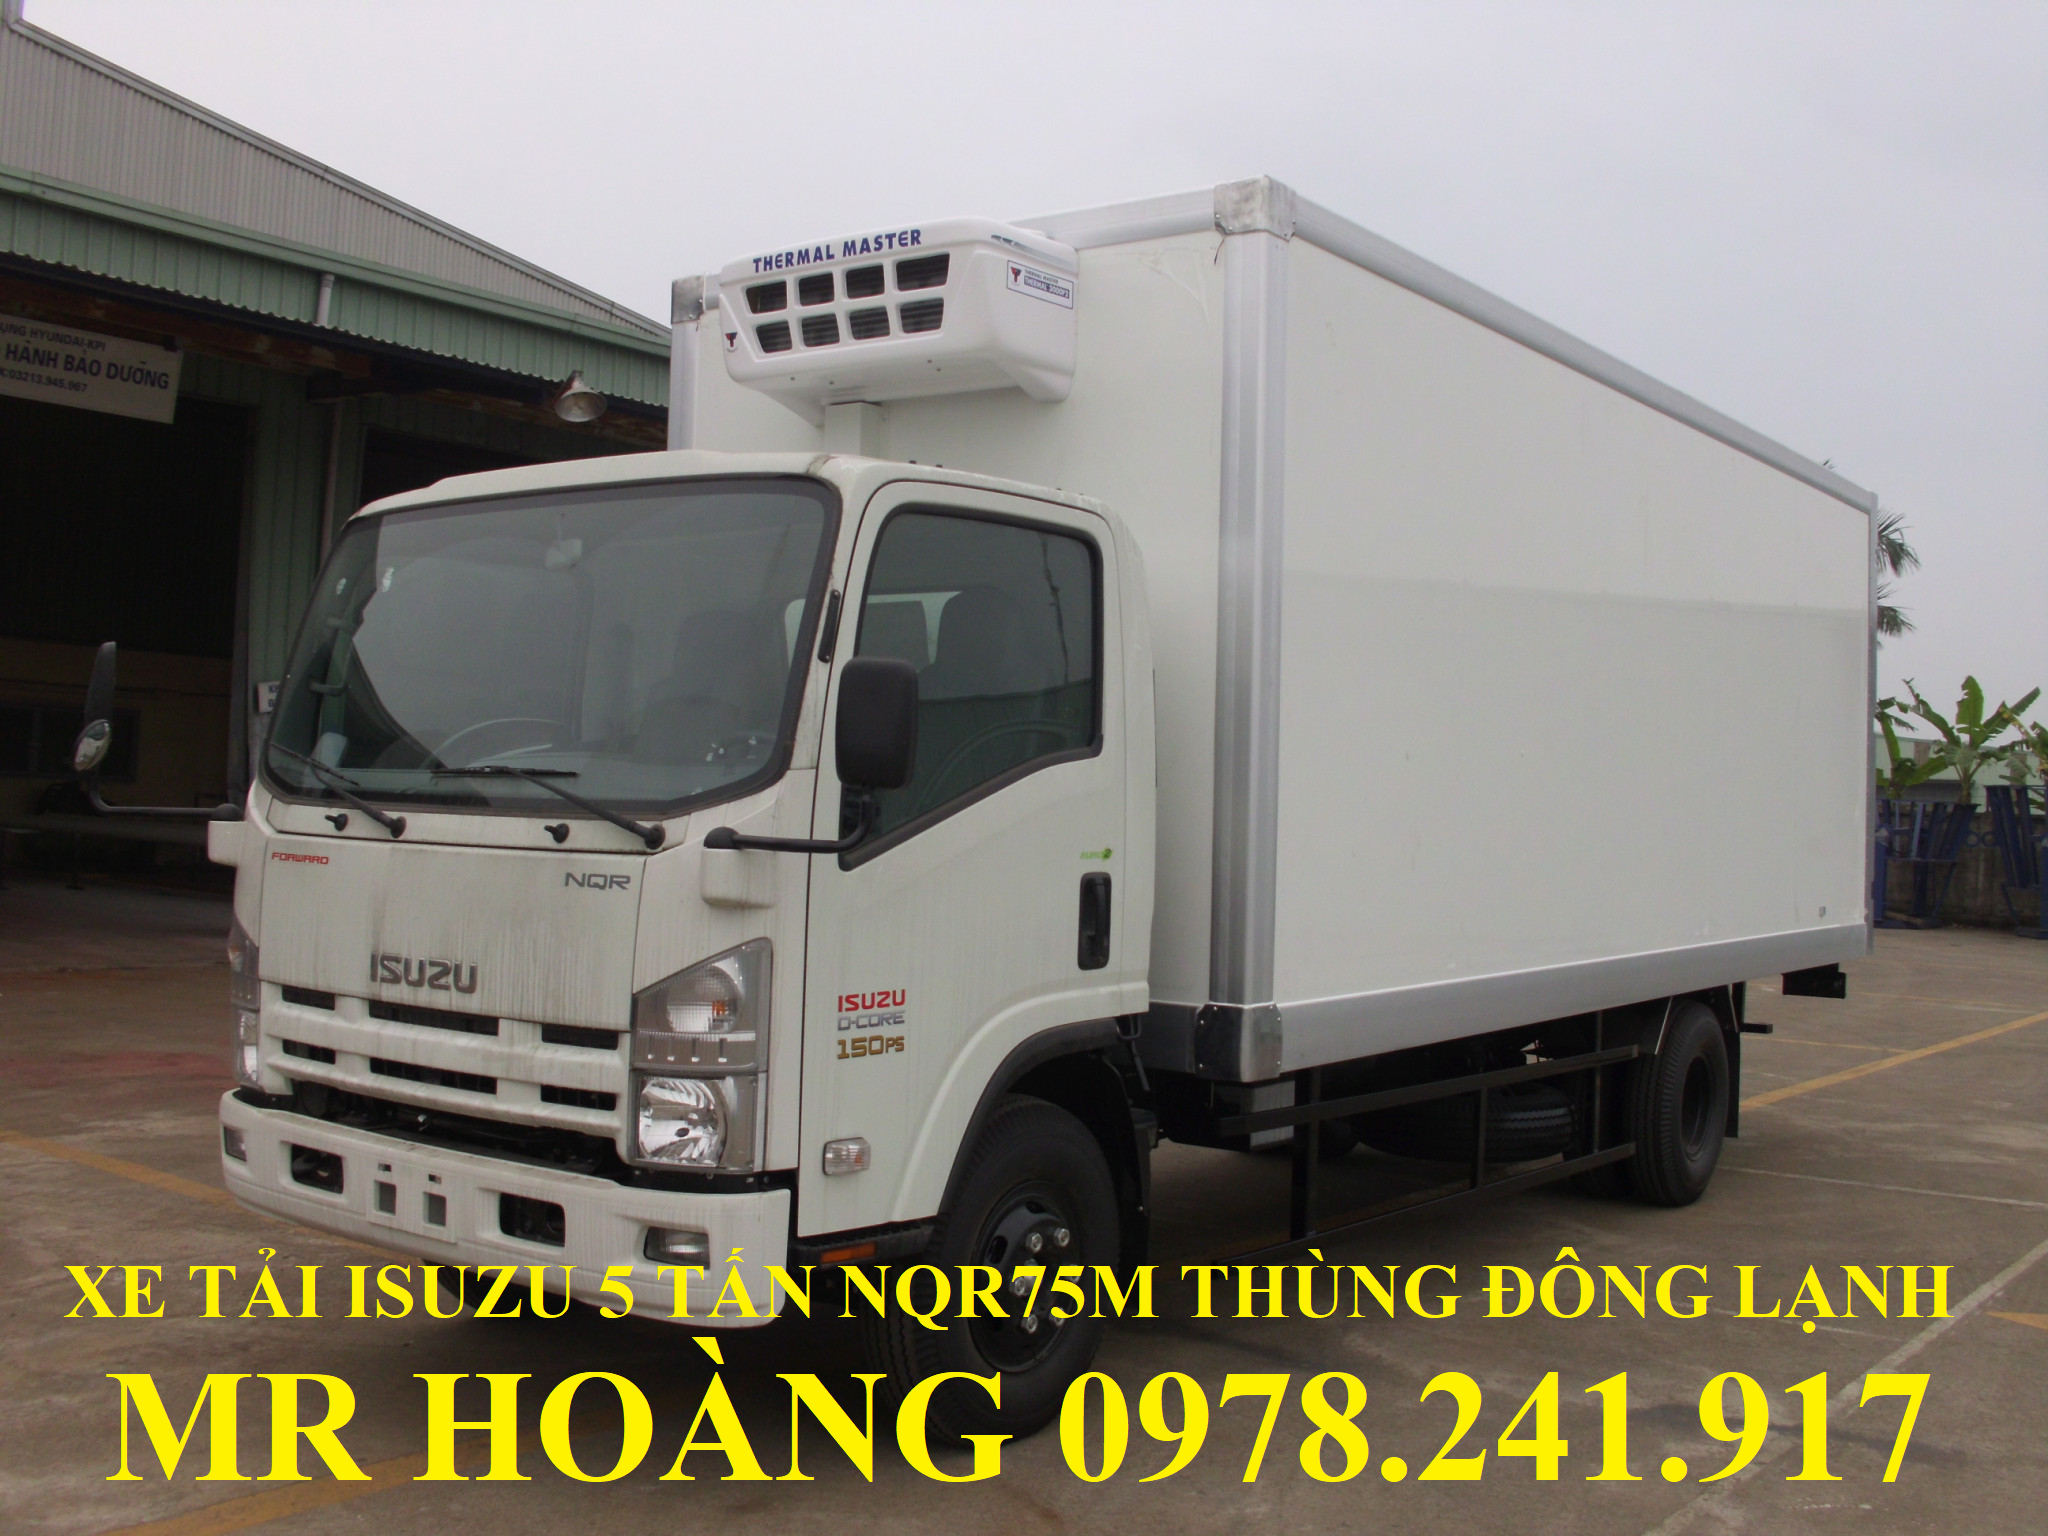 xe tải isuzu 5 tấn nqr75m thùng đông lạnh